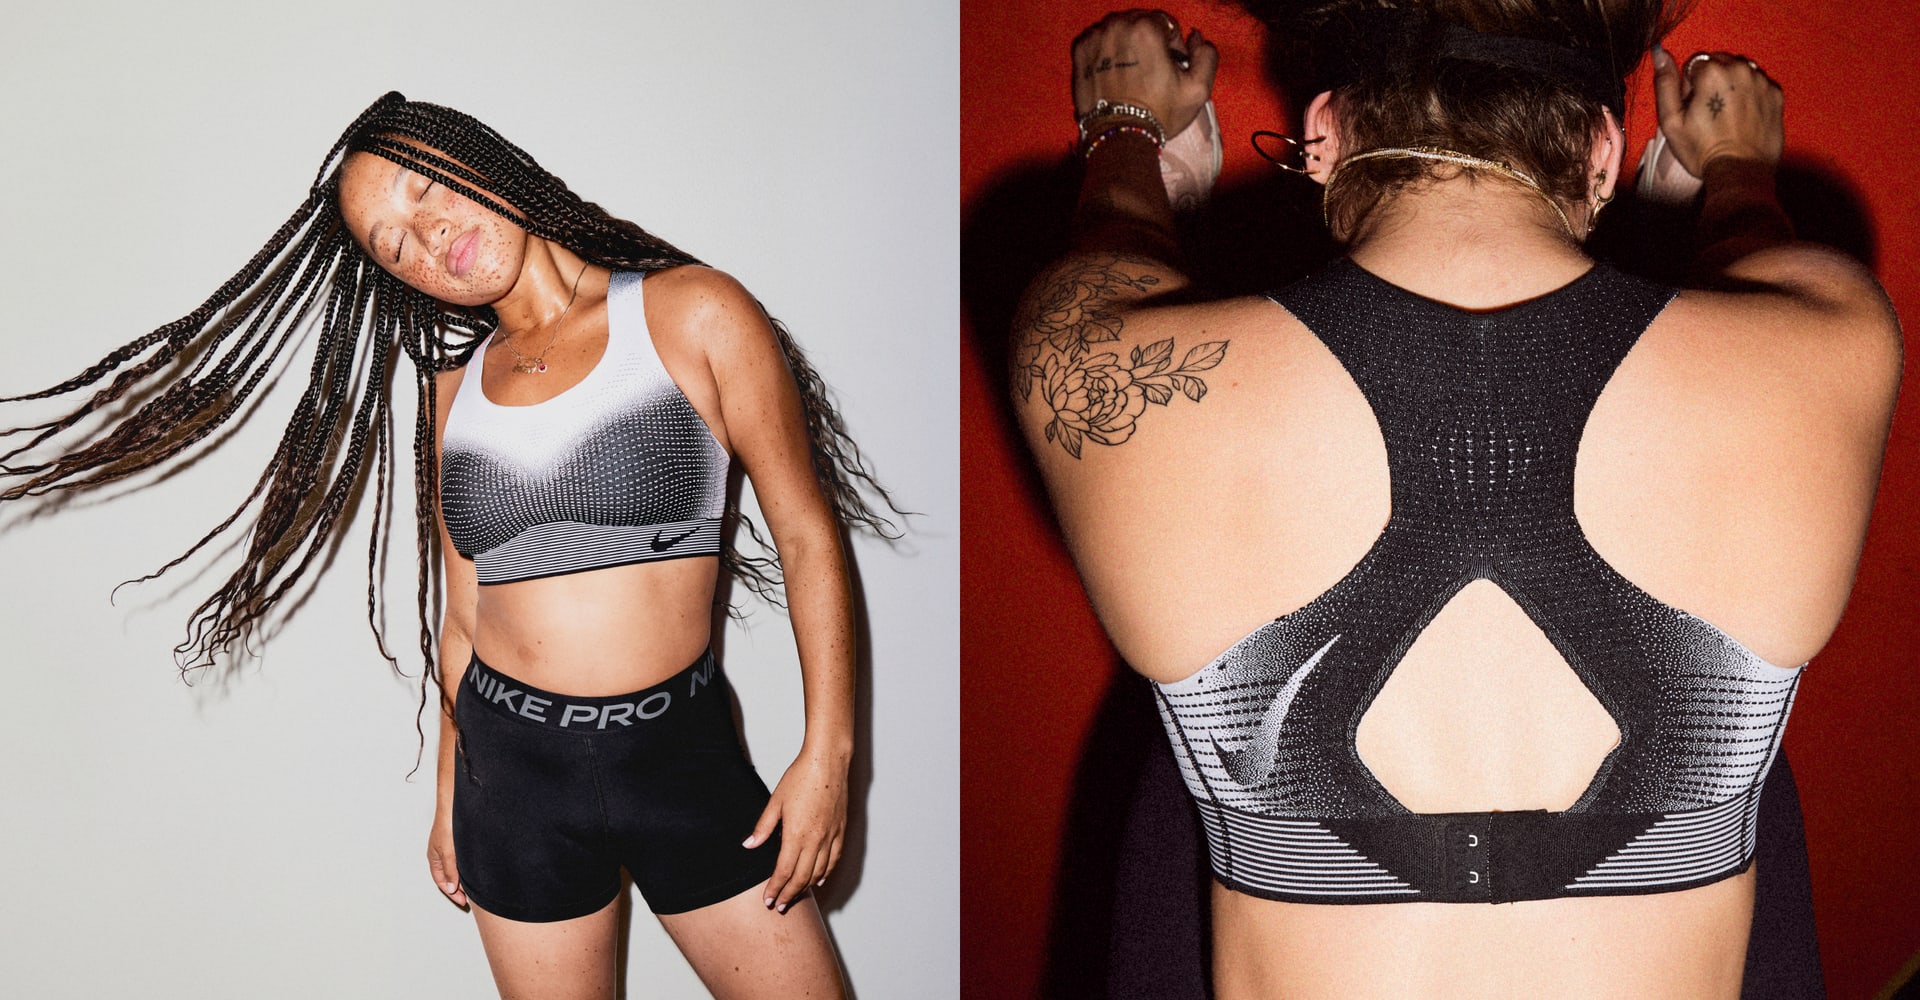 Nike Swoosh Flyknit ungepolsterter Sport-BH mit starkem Halt für Damen